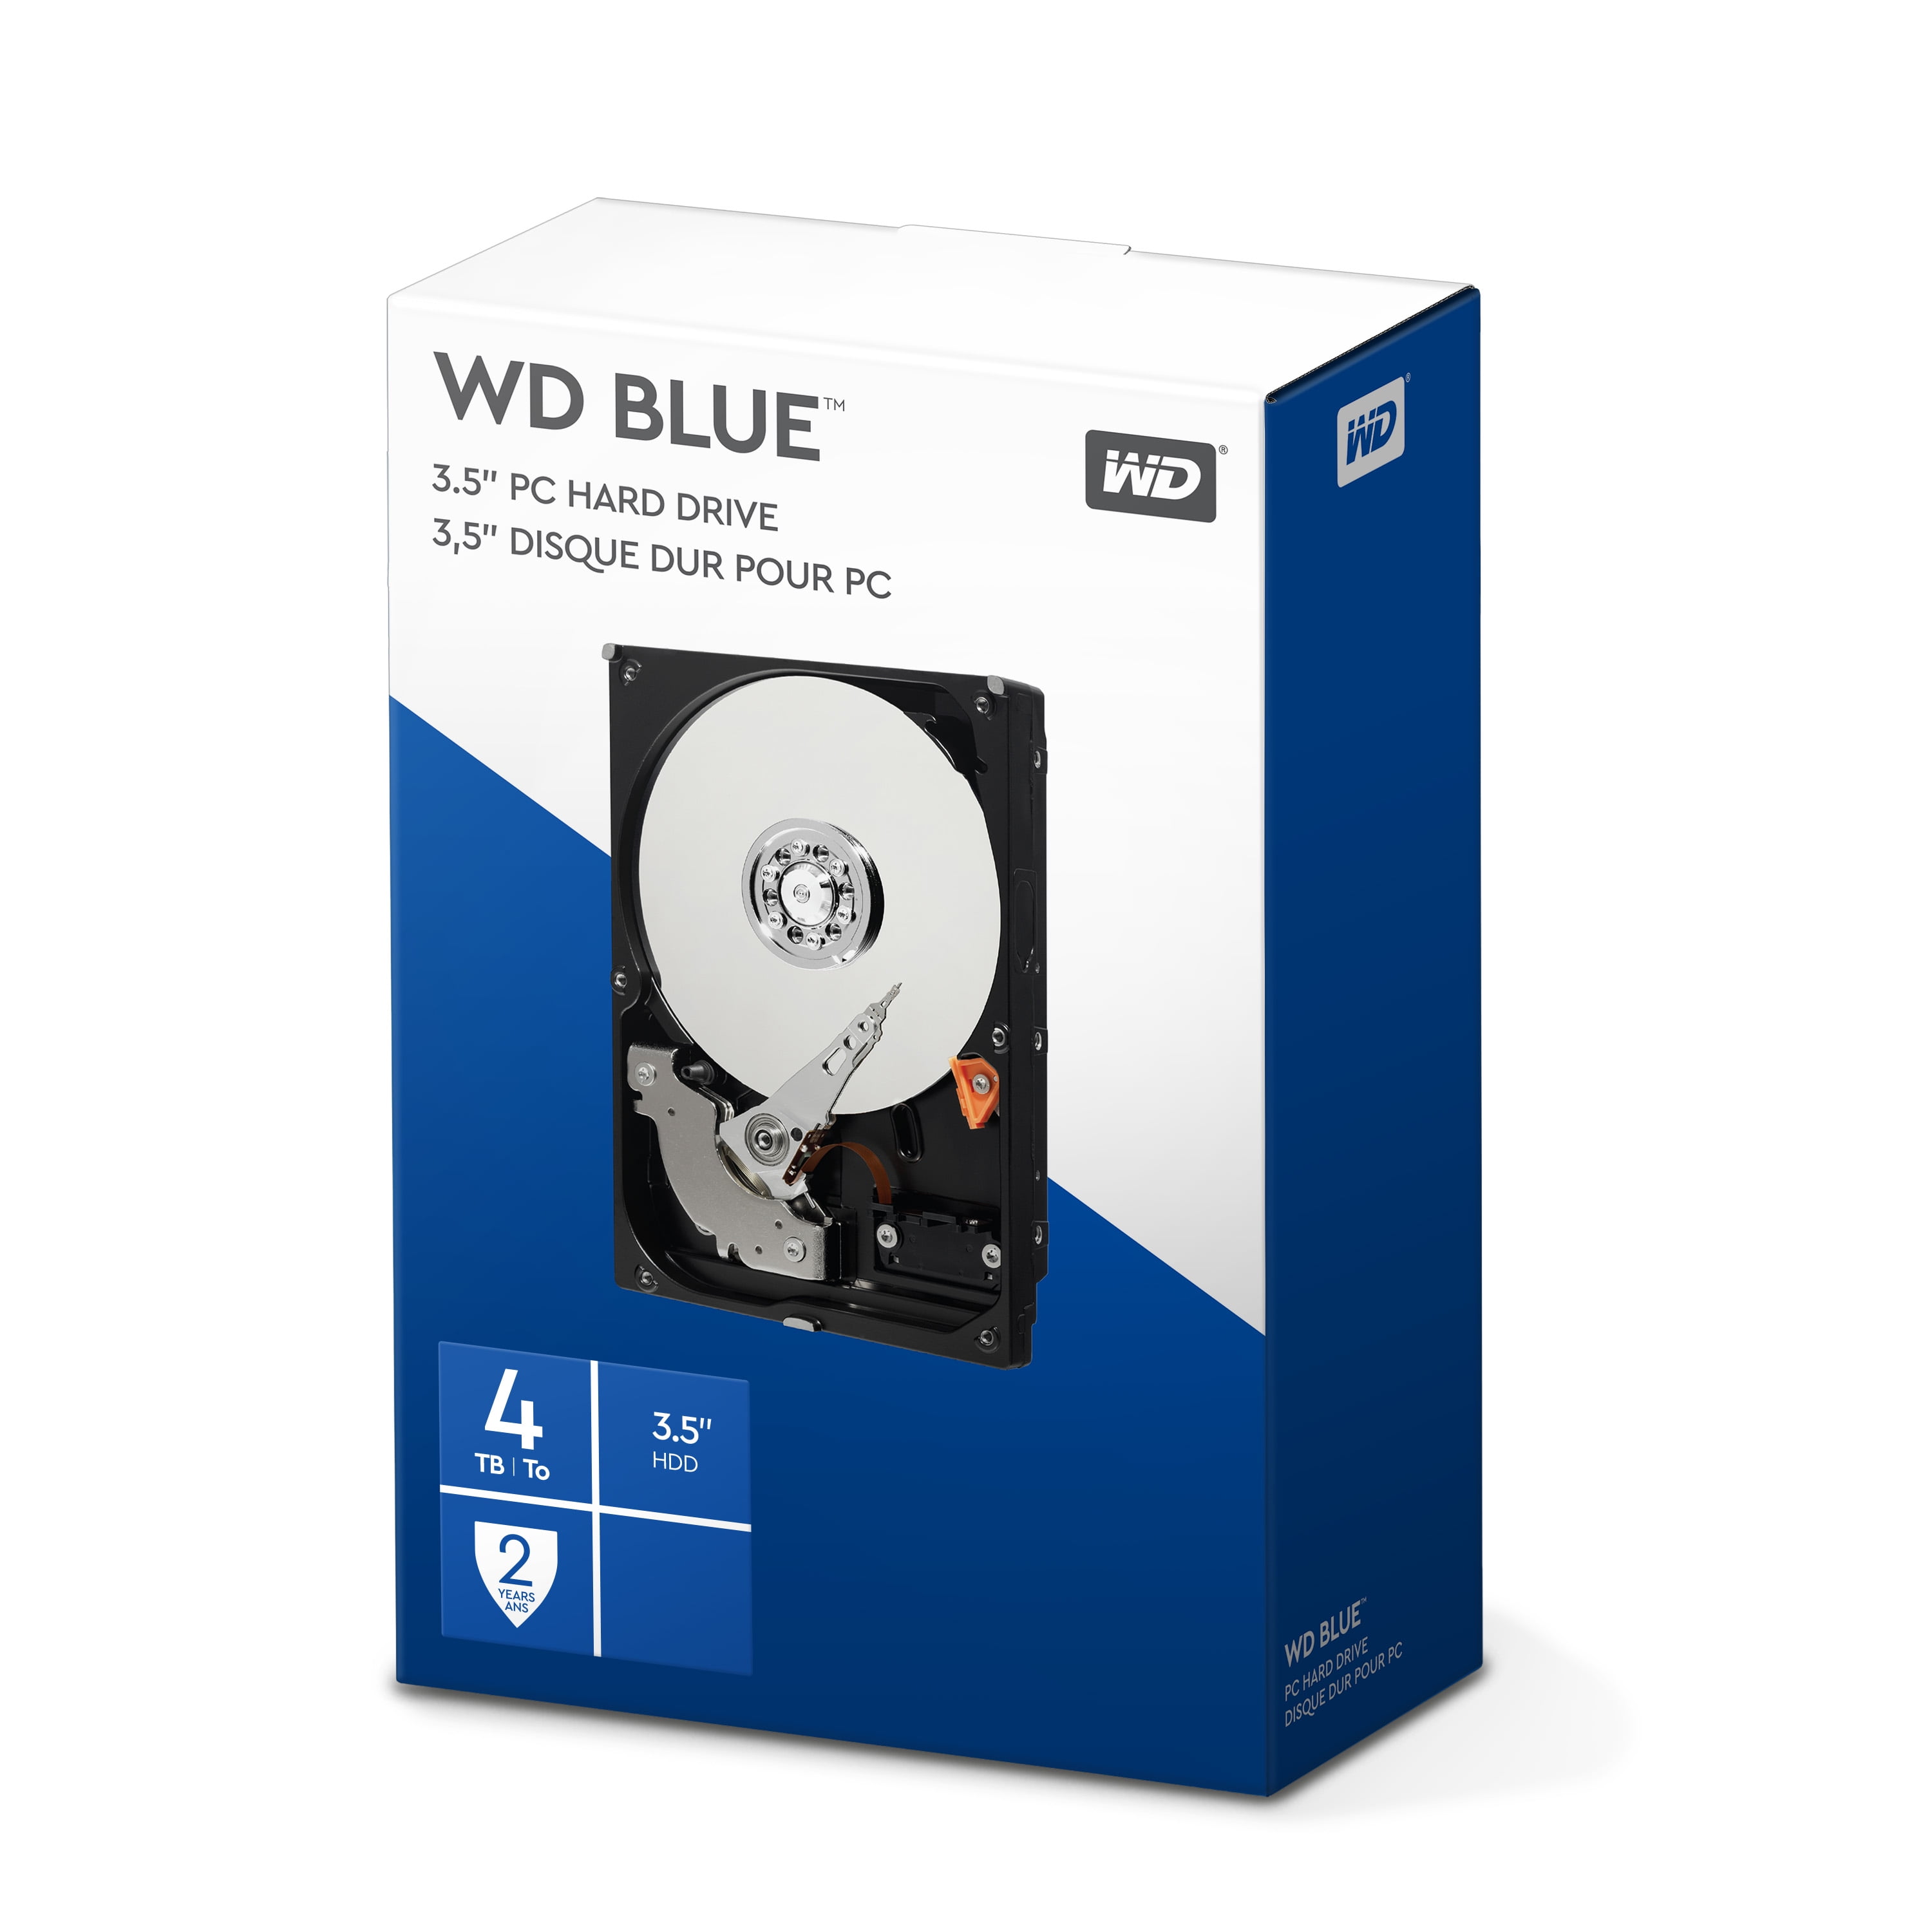 WD Blue 4TB PC Hard Drive - 5400 RPM Class, SATA 6 Gb/s, 64 MB Cache, 3.5